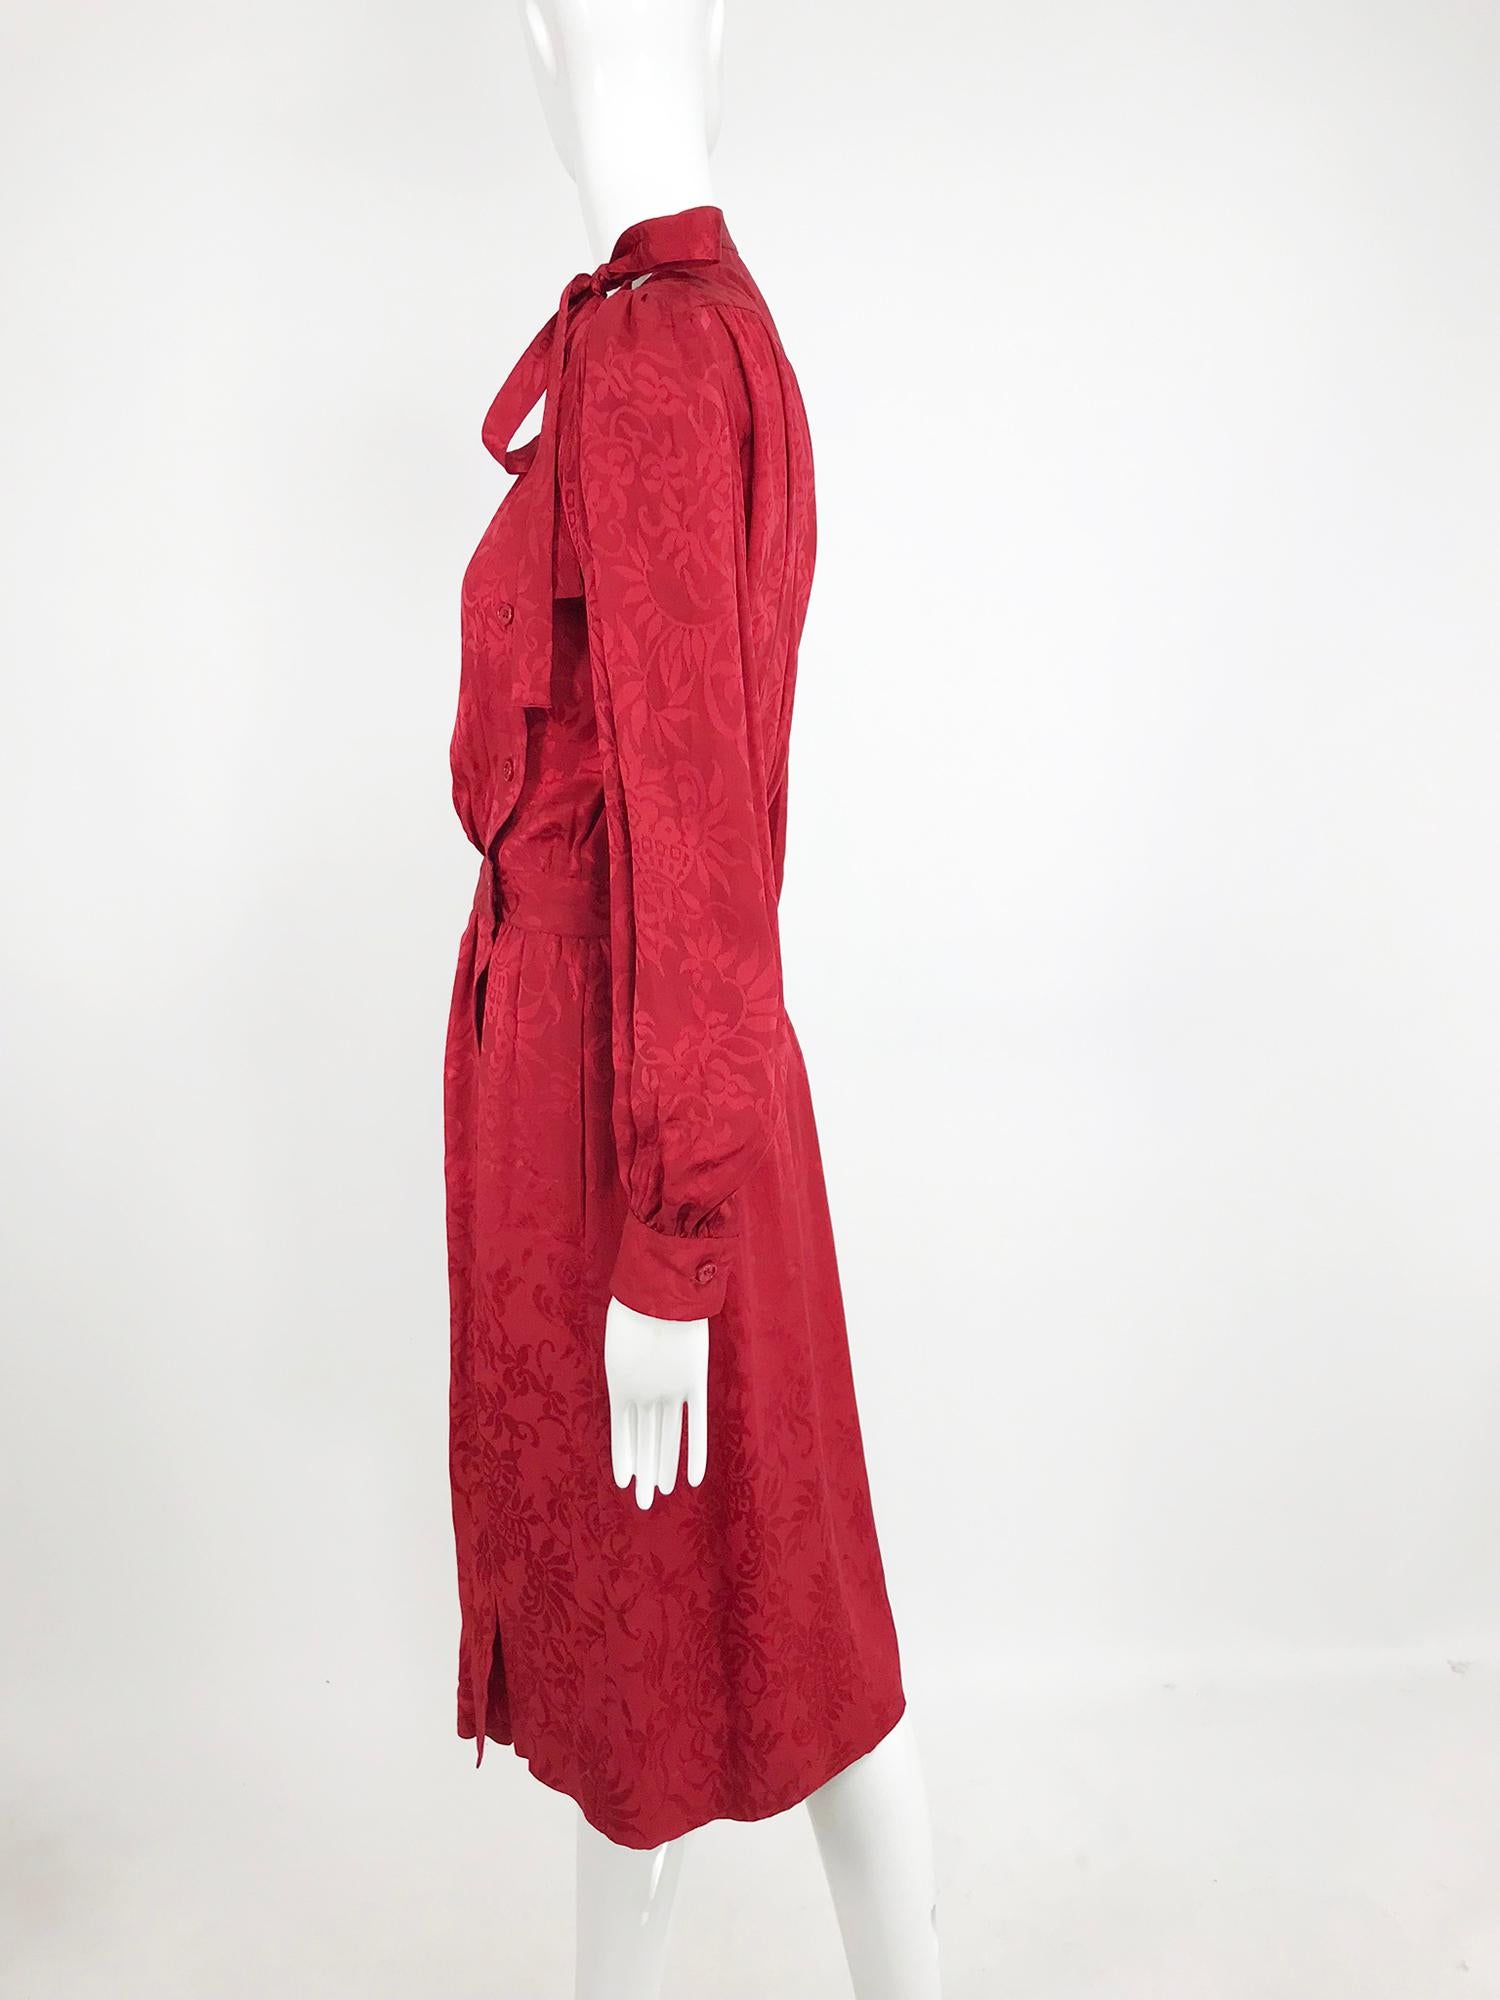 Yves Saint Laurent - Robe en jacquard de soie rouge avec nœud papillon, années 1970 10